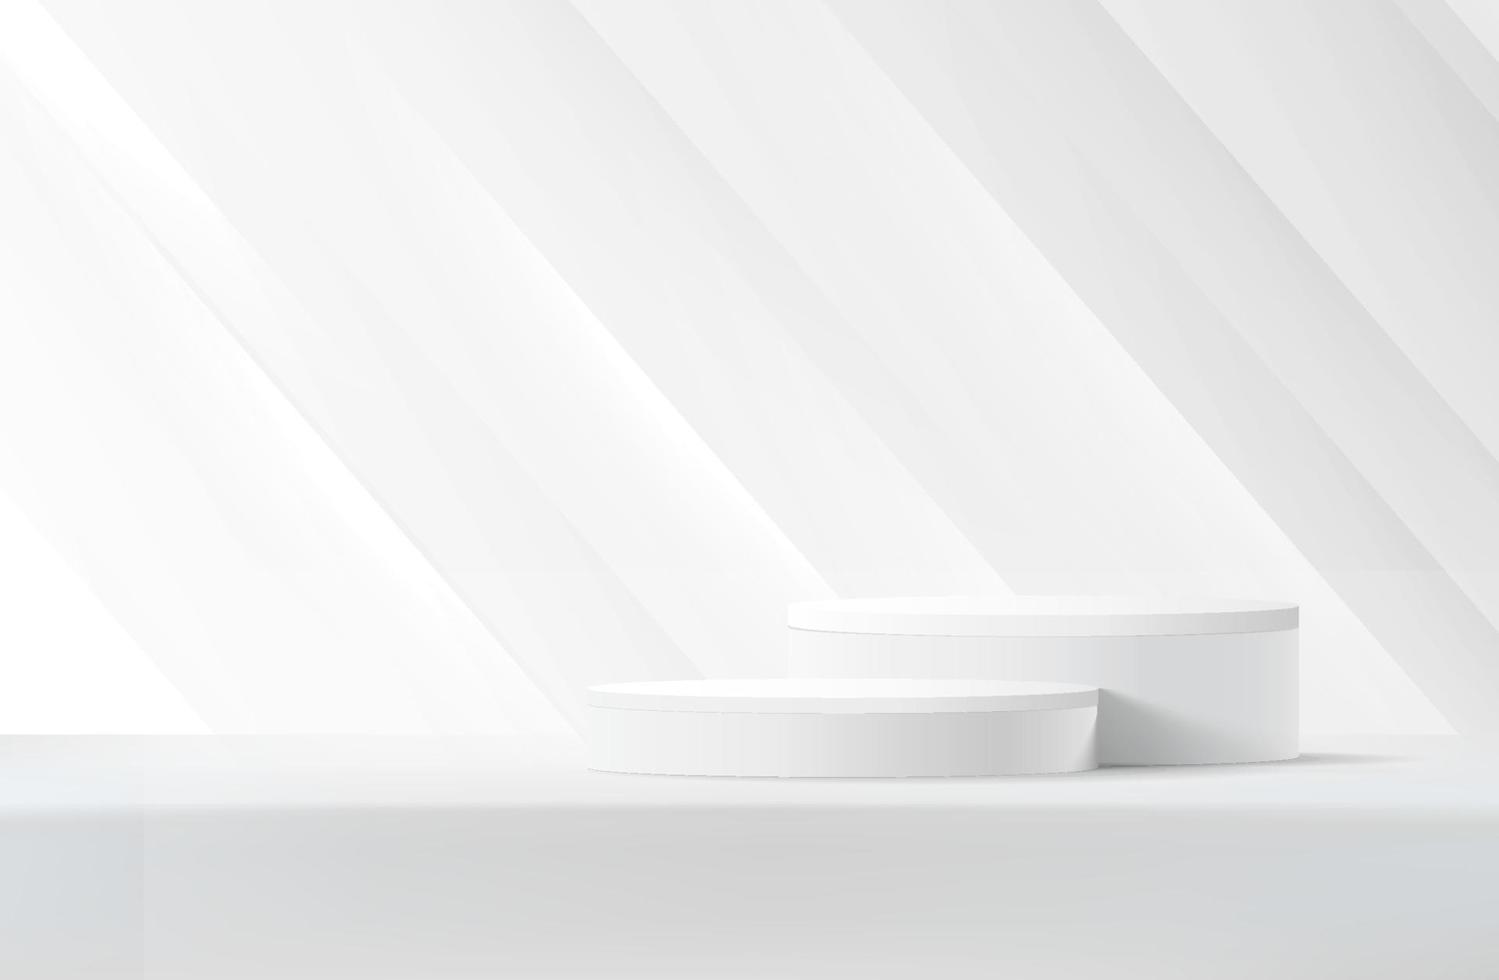 podium de piédestal de cylindre 3d réaliste blanc abstrait avec fond bleu et superposition d'ombre. plate-forme géométrique de rendu vectoriel abstrait. présentation de l'affichage du produit. scène minimale.